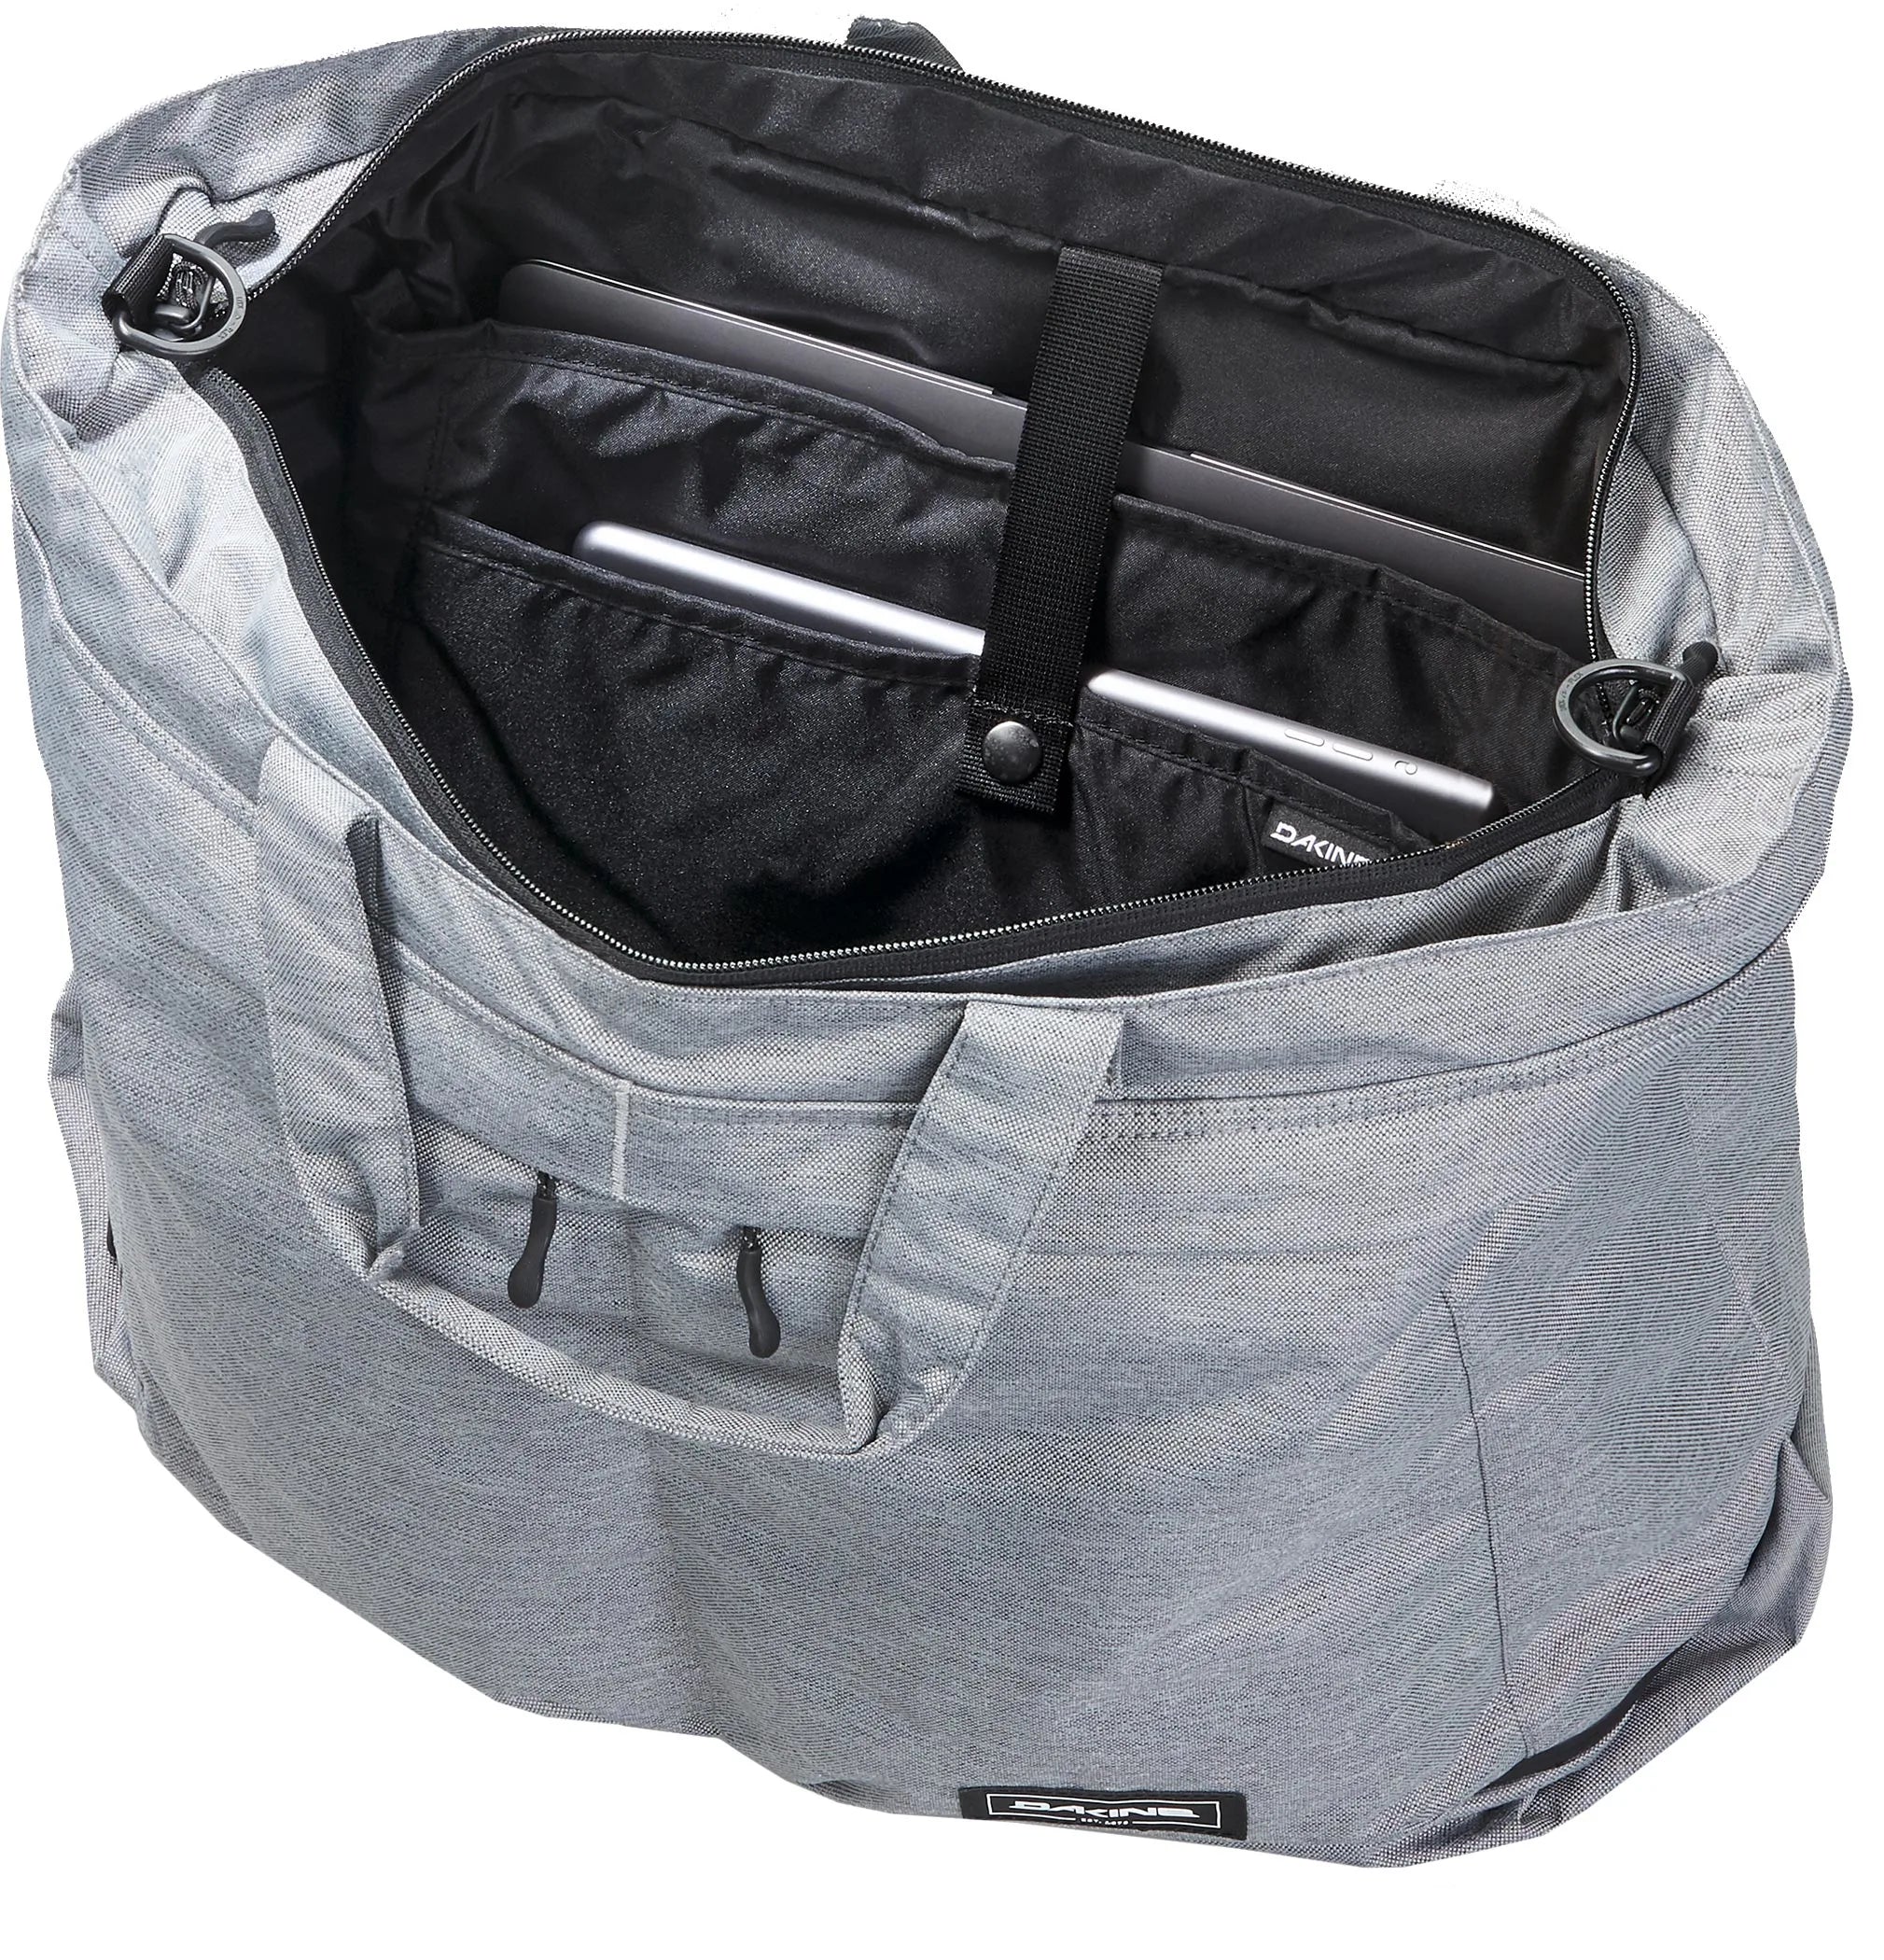 Dakine Packs & Bags Verge Weekender 60 cm - Black Ripstop